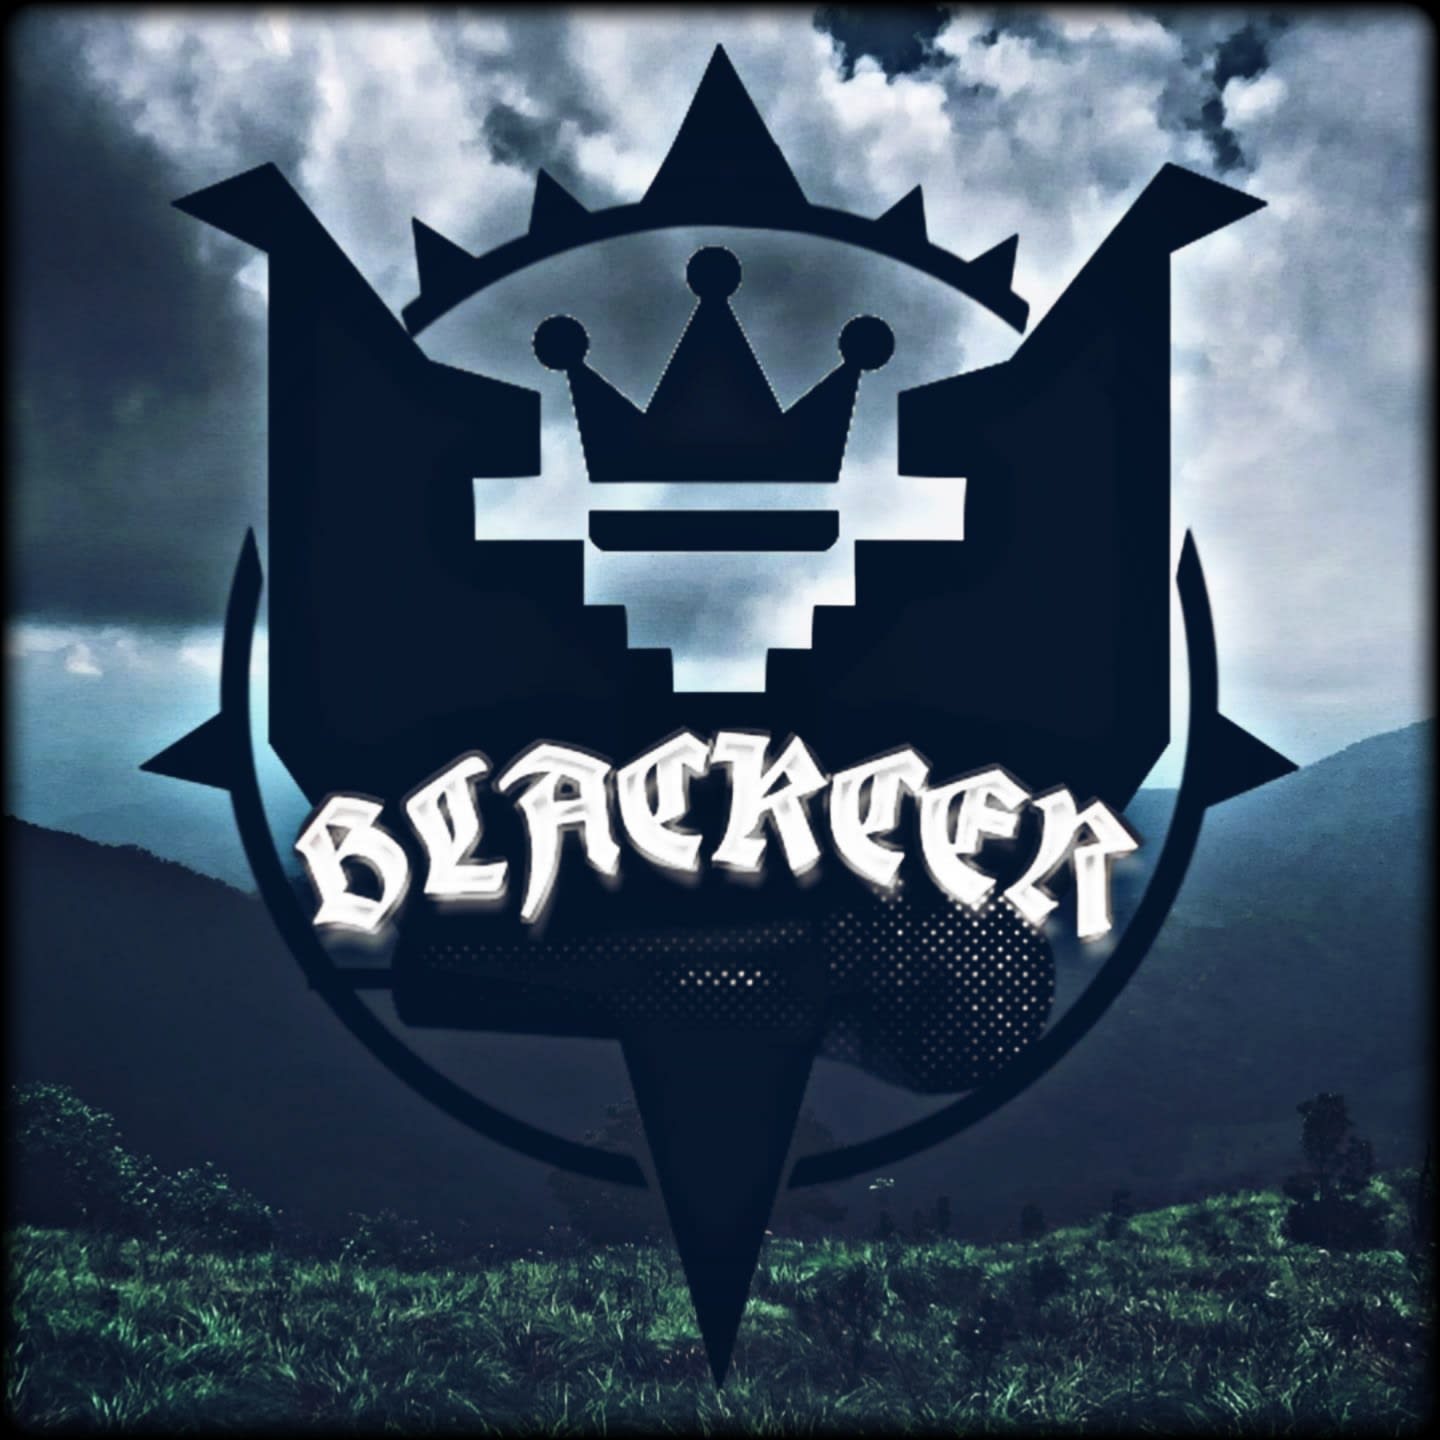 Blackcer